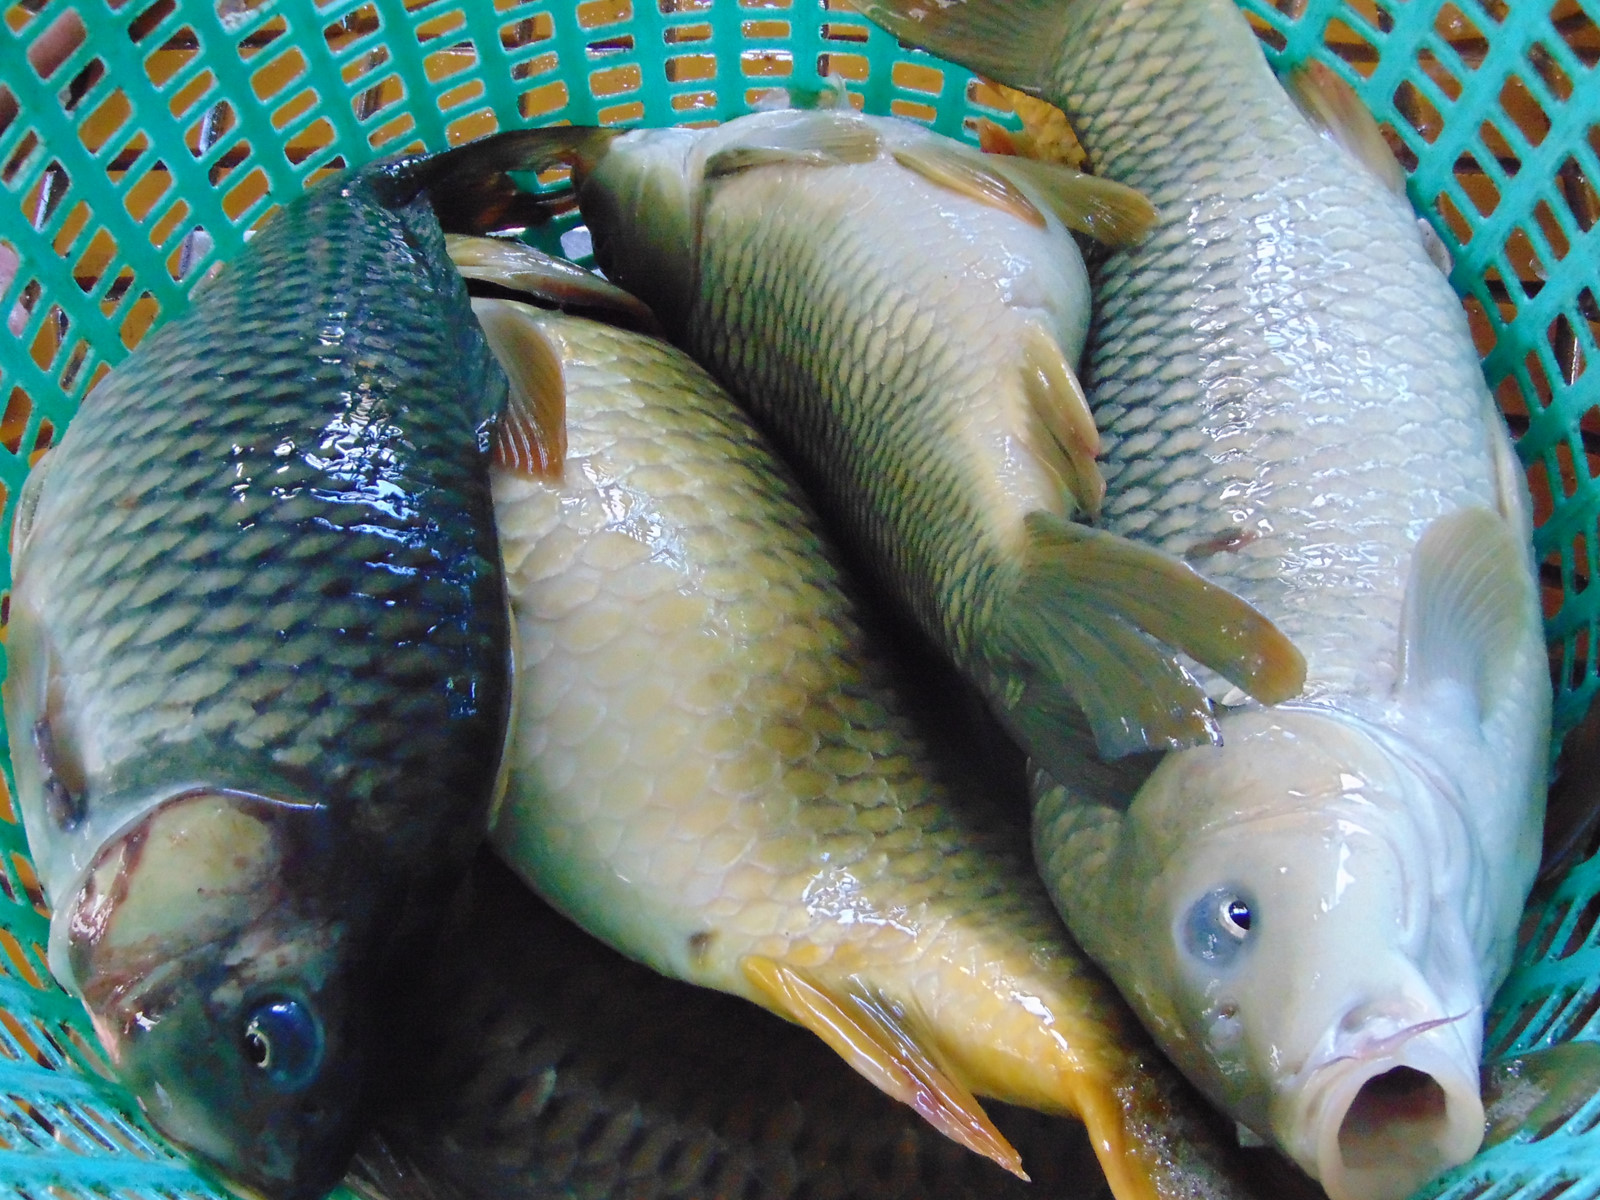 Mua cá chép giòn tại Hà Nội giá rẻ cần có một vài lưu ý quan trọng để đảm bảo chất lượng, an toàn